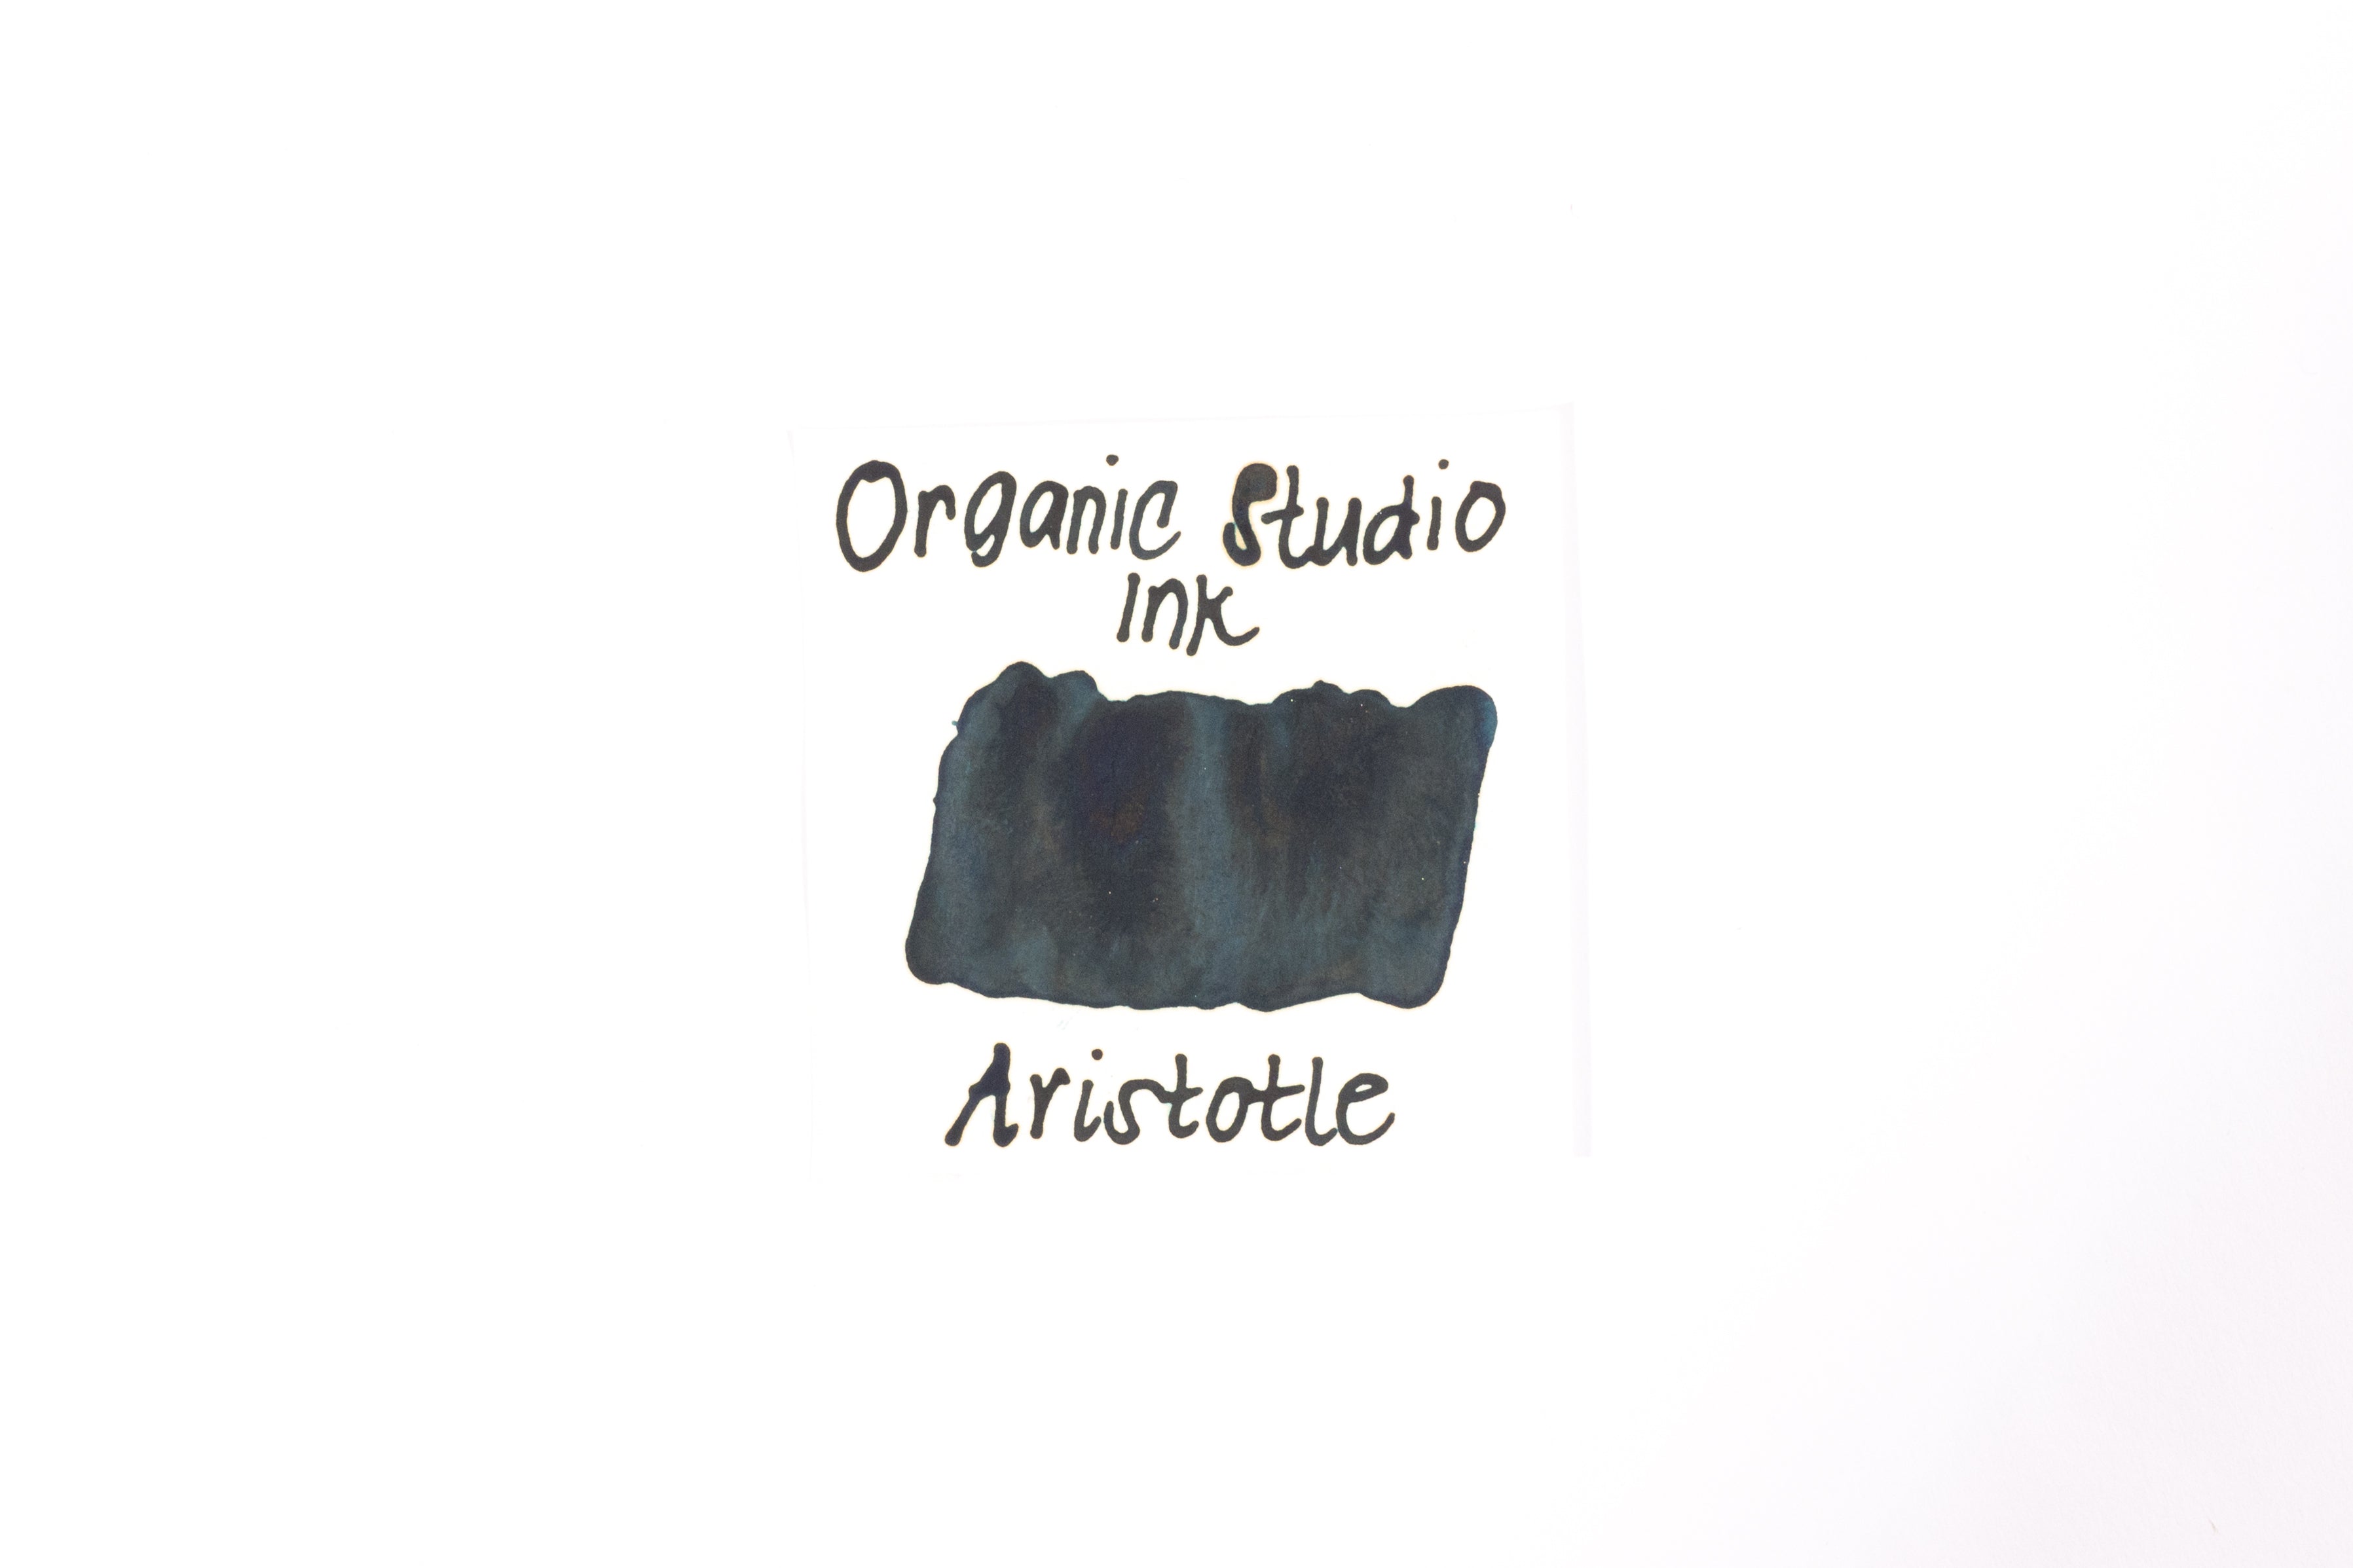 Organics Studio Sample Vials